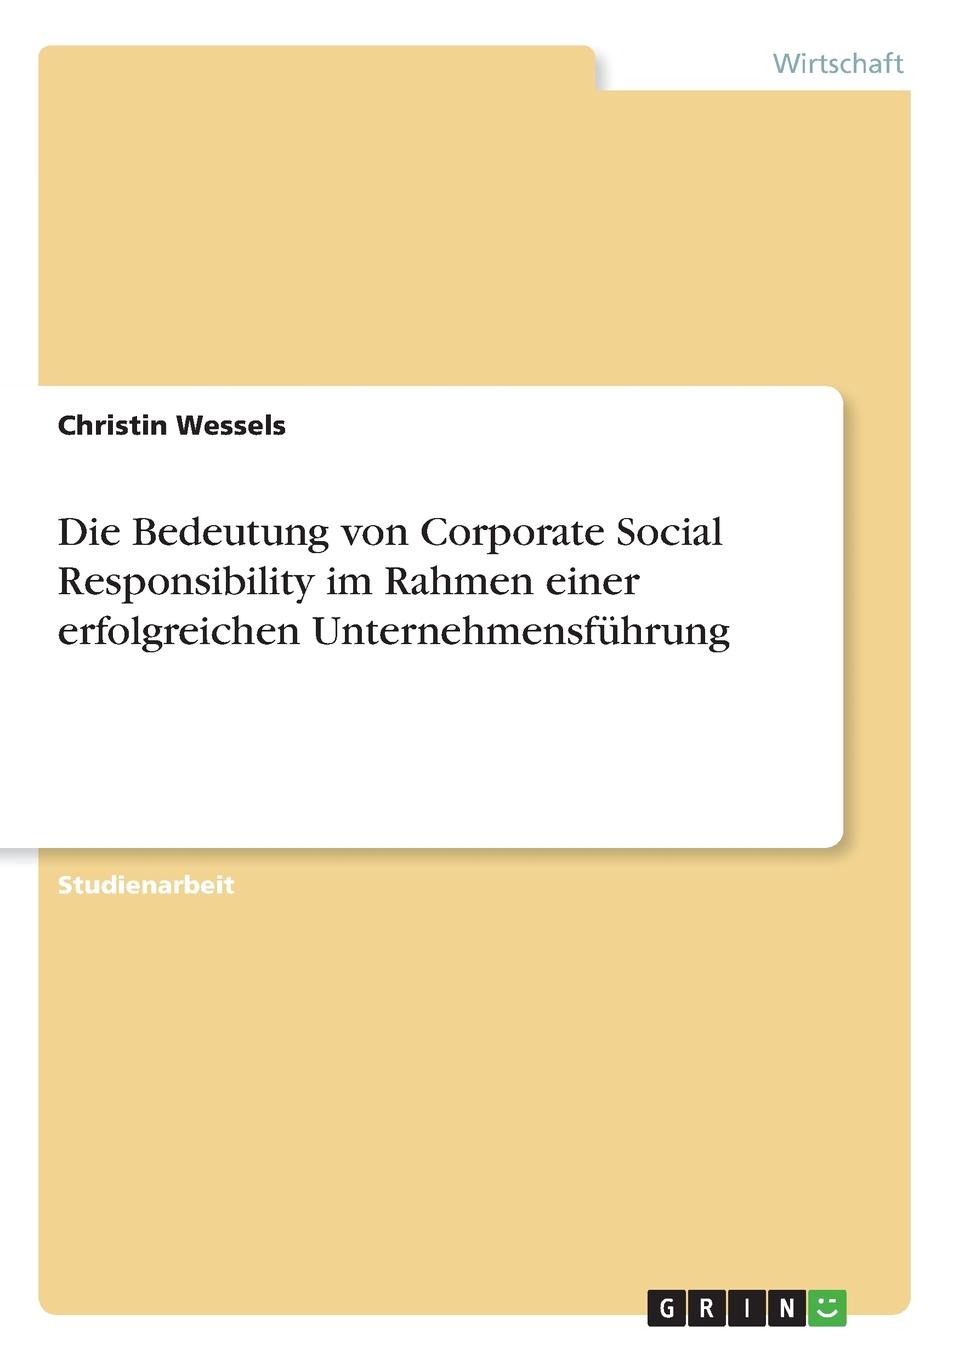 Die Bedeutung von Corporate Social Responsibility im Rahmen einer erfolgreichen Unternehmensfuhrung